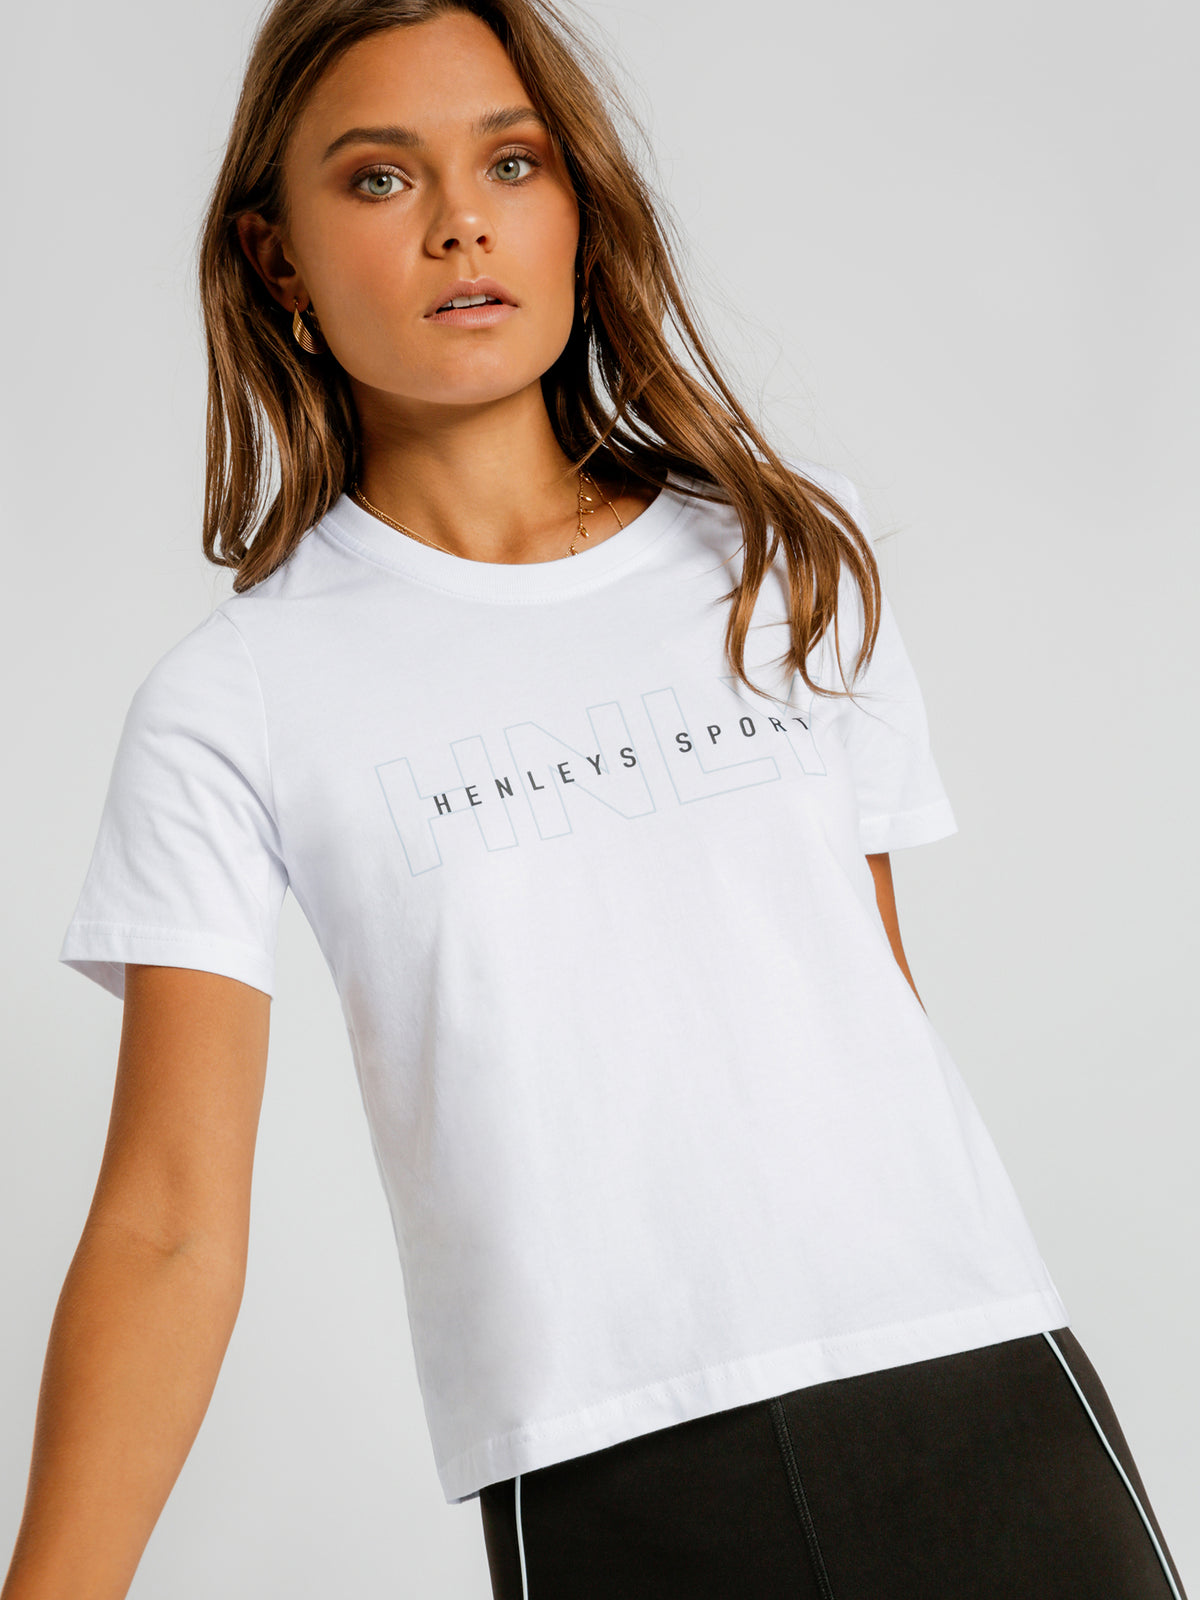 Sellars T-Shirt in White